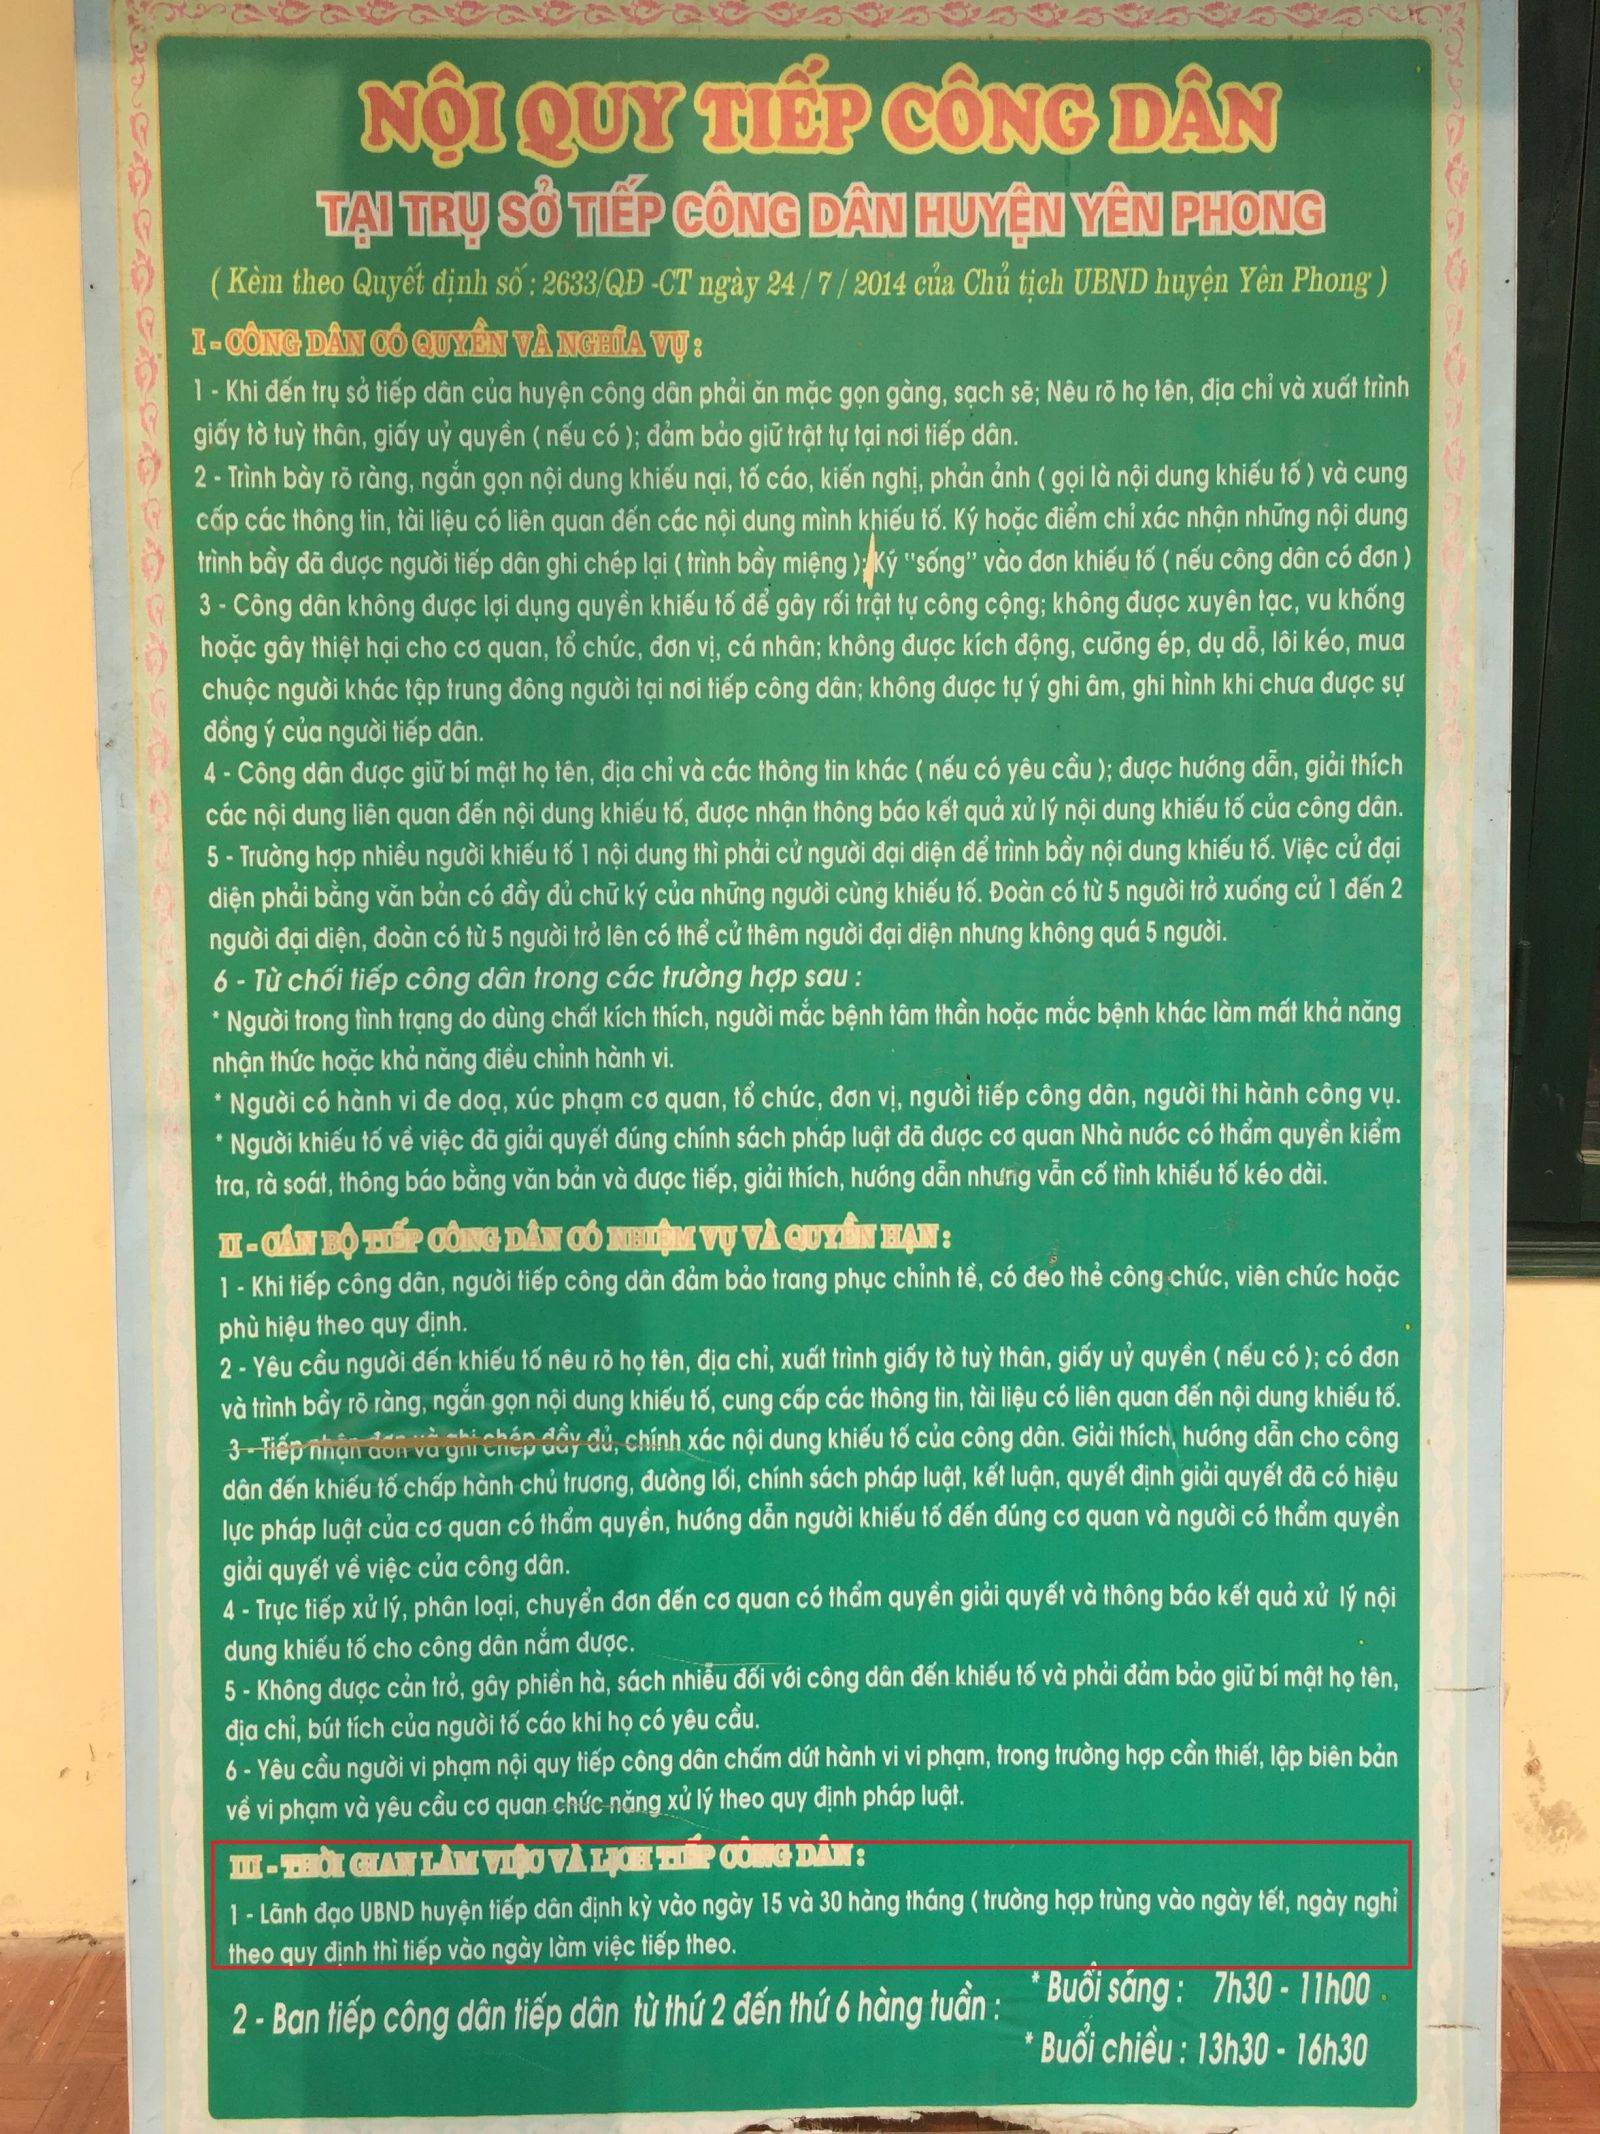 bảng Nội quy tiếp công dân treo ngay trước Trụ sở tiếp công dân huyện Yên Phong – Bắc Ninh